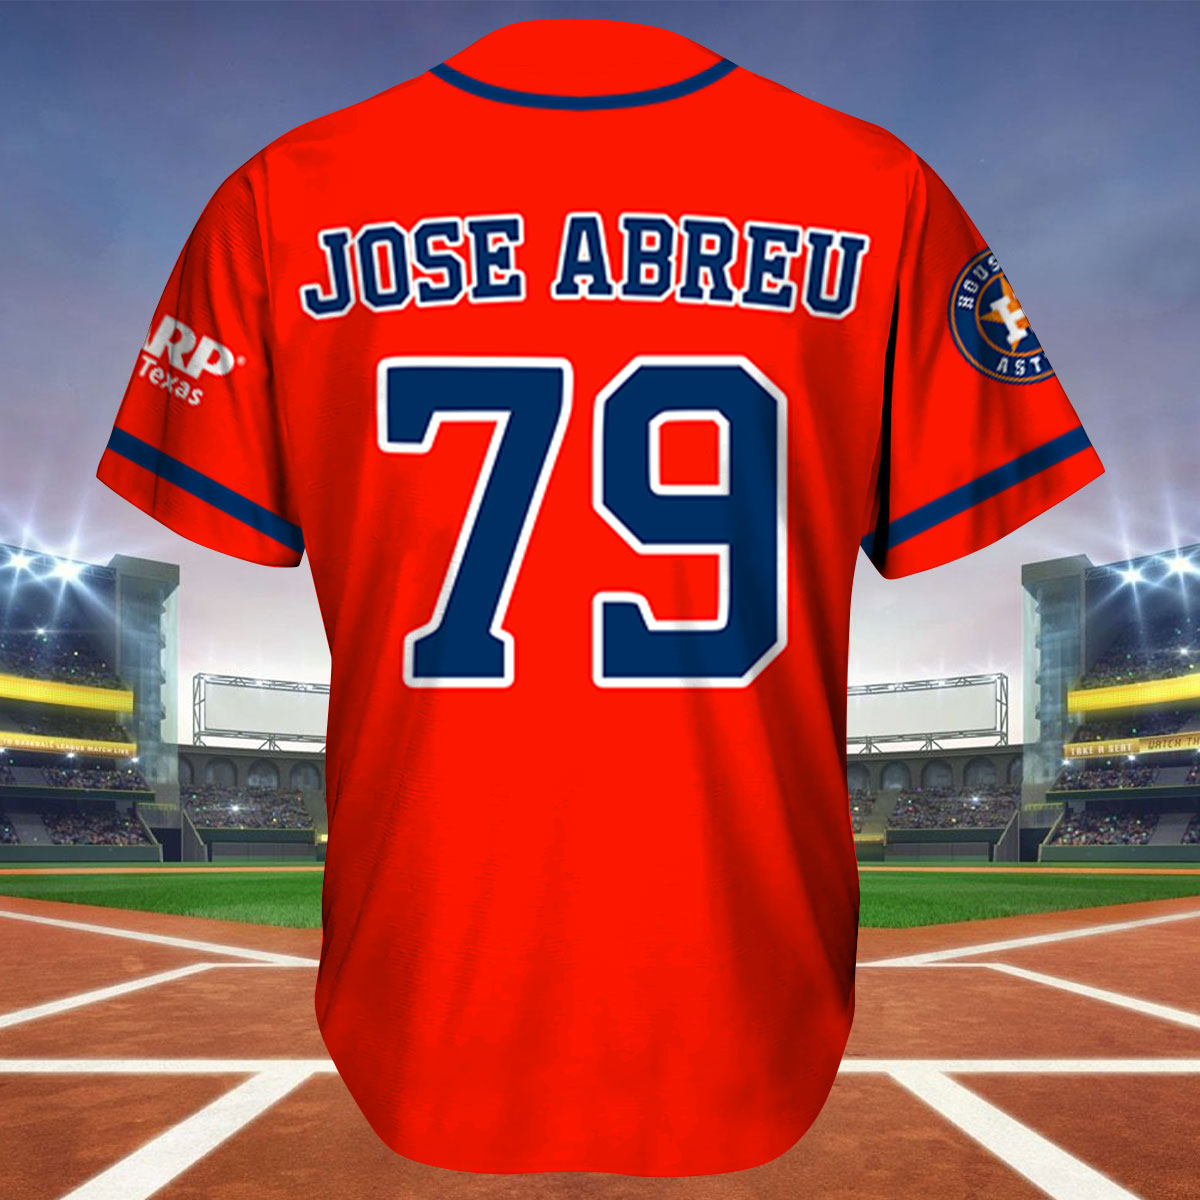 Houston Astros - José Abreu will wear jersey number 79